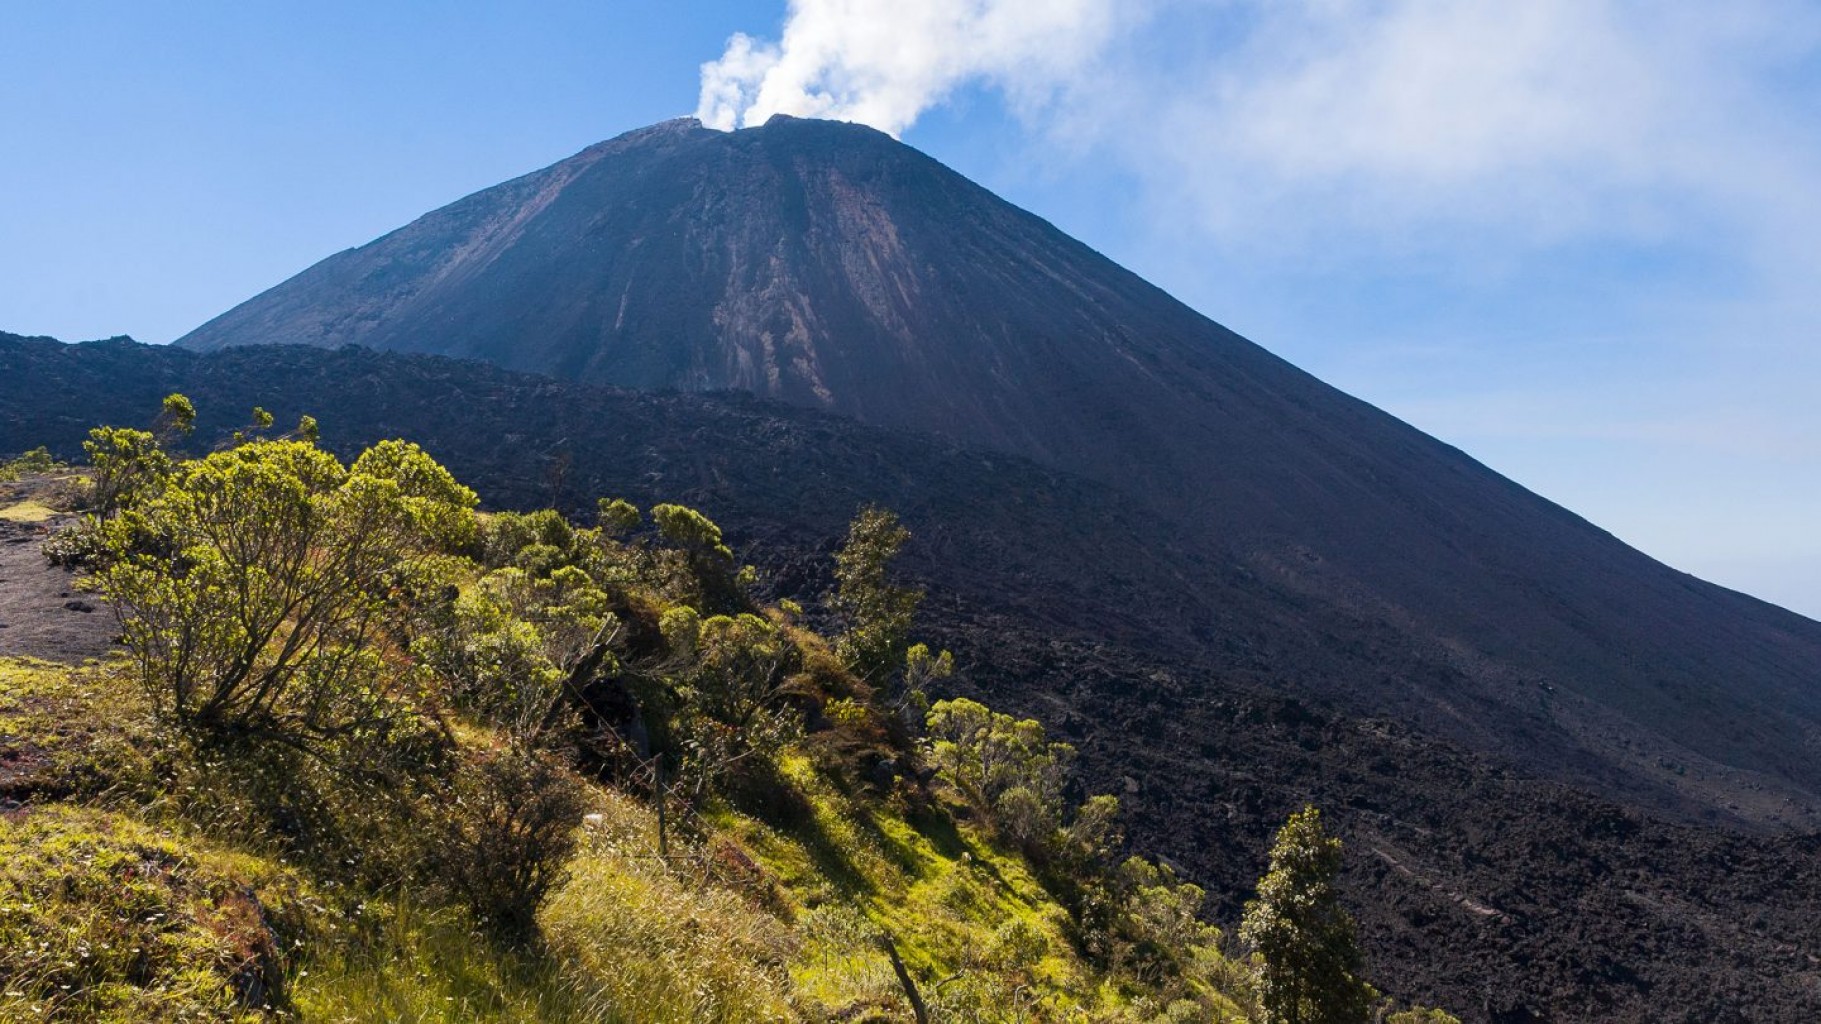 Vivir con un monstruo: turismo en un volcán de Guatemala